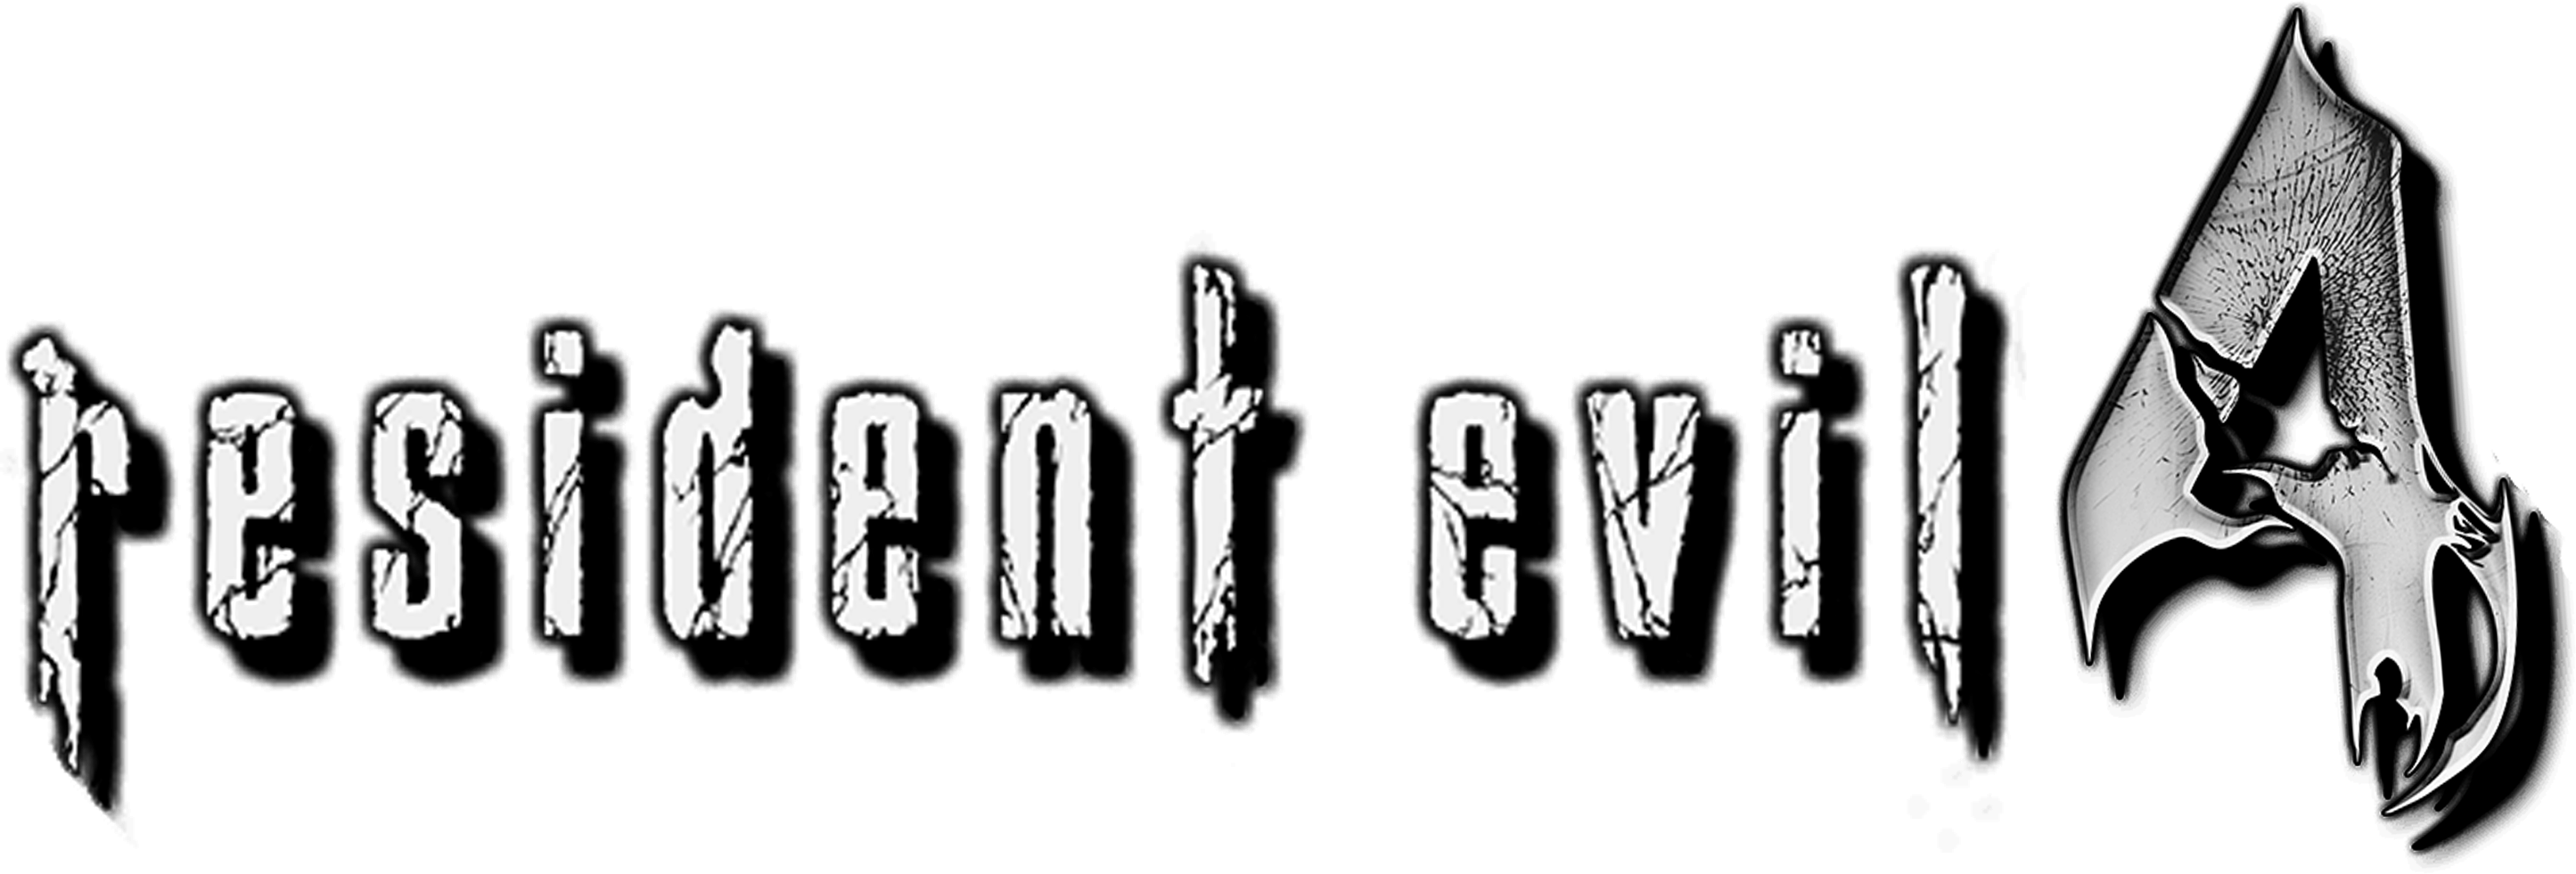 Resident Evil 4 Logo PNG Images HD